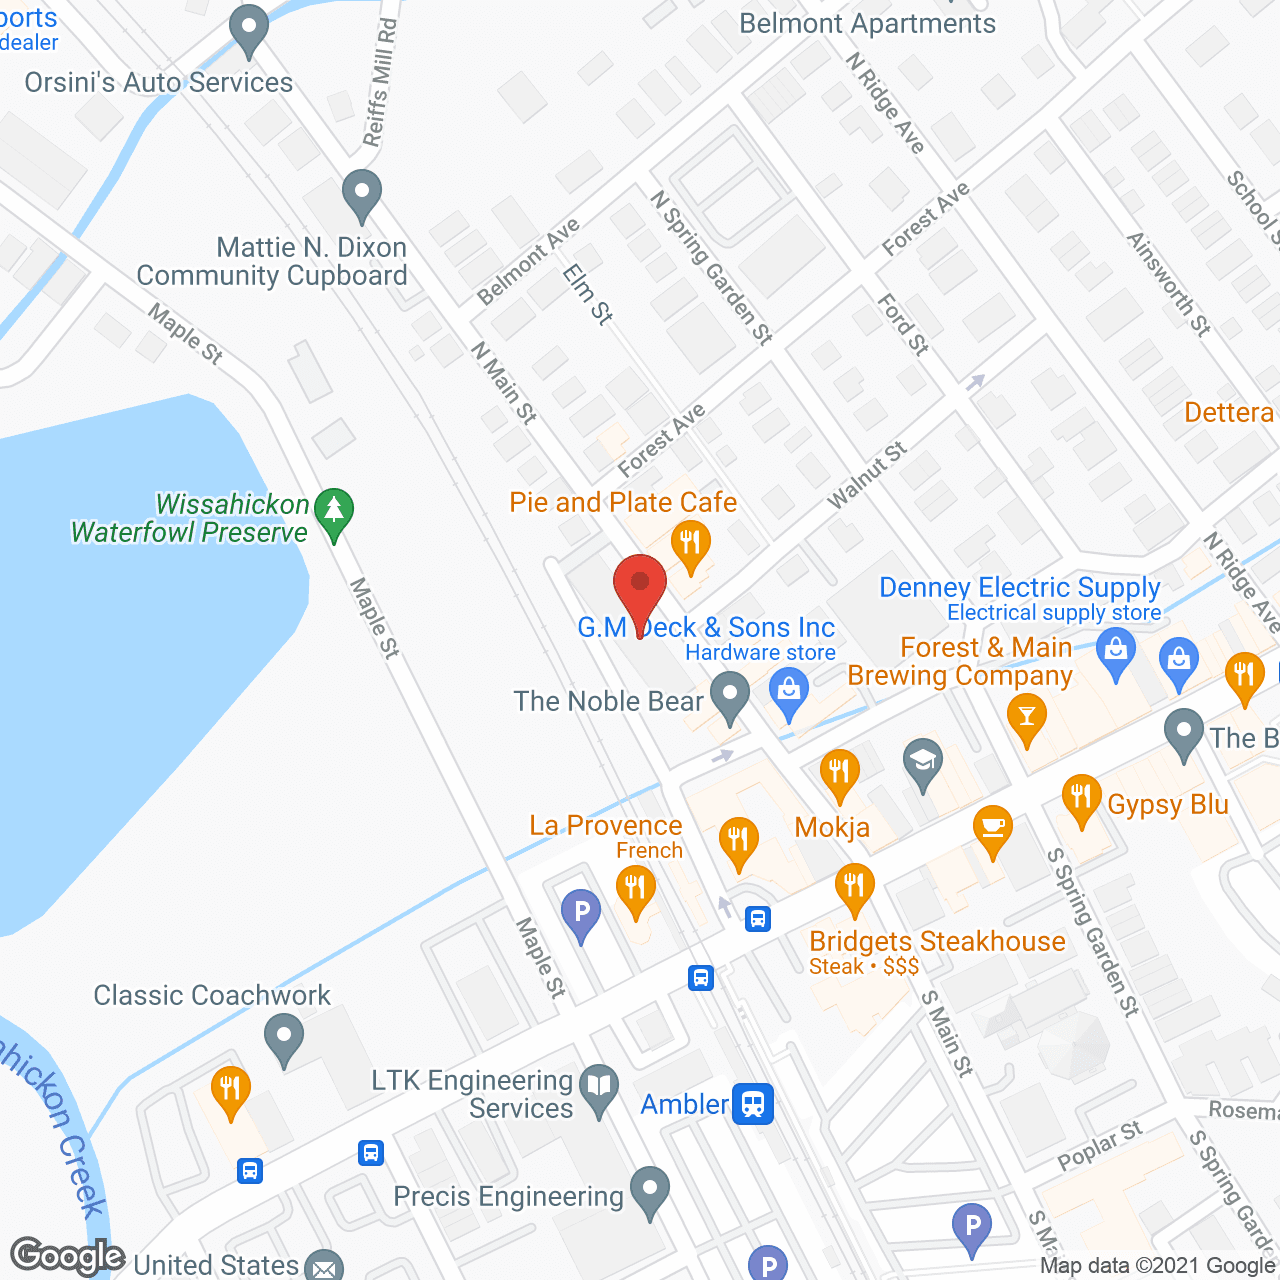 Ambler Manor in google map